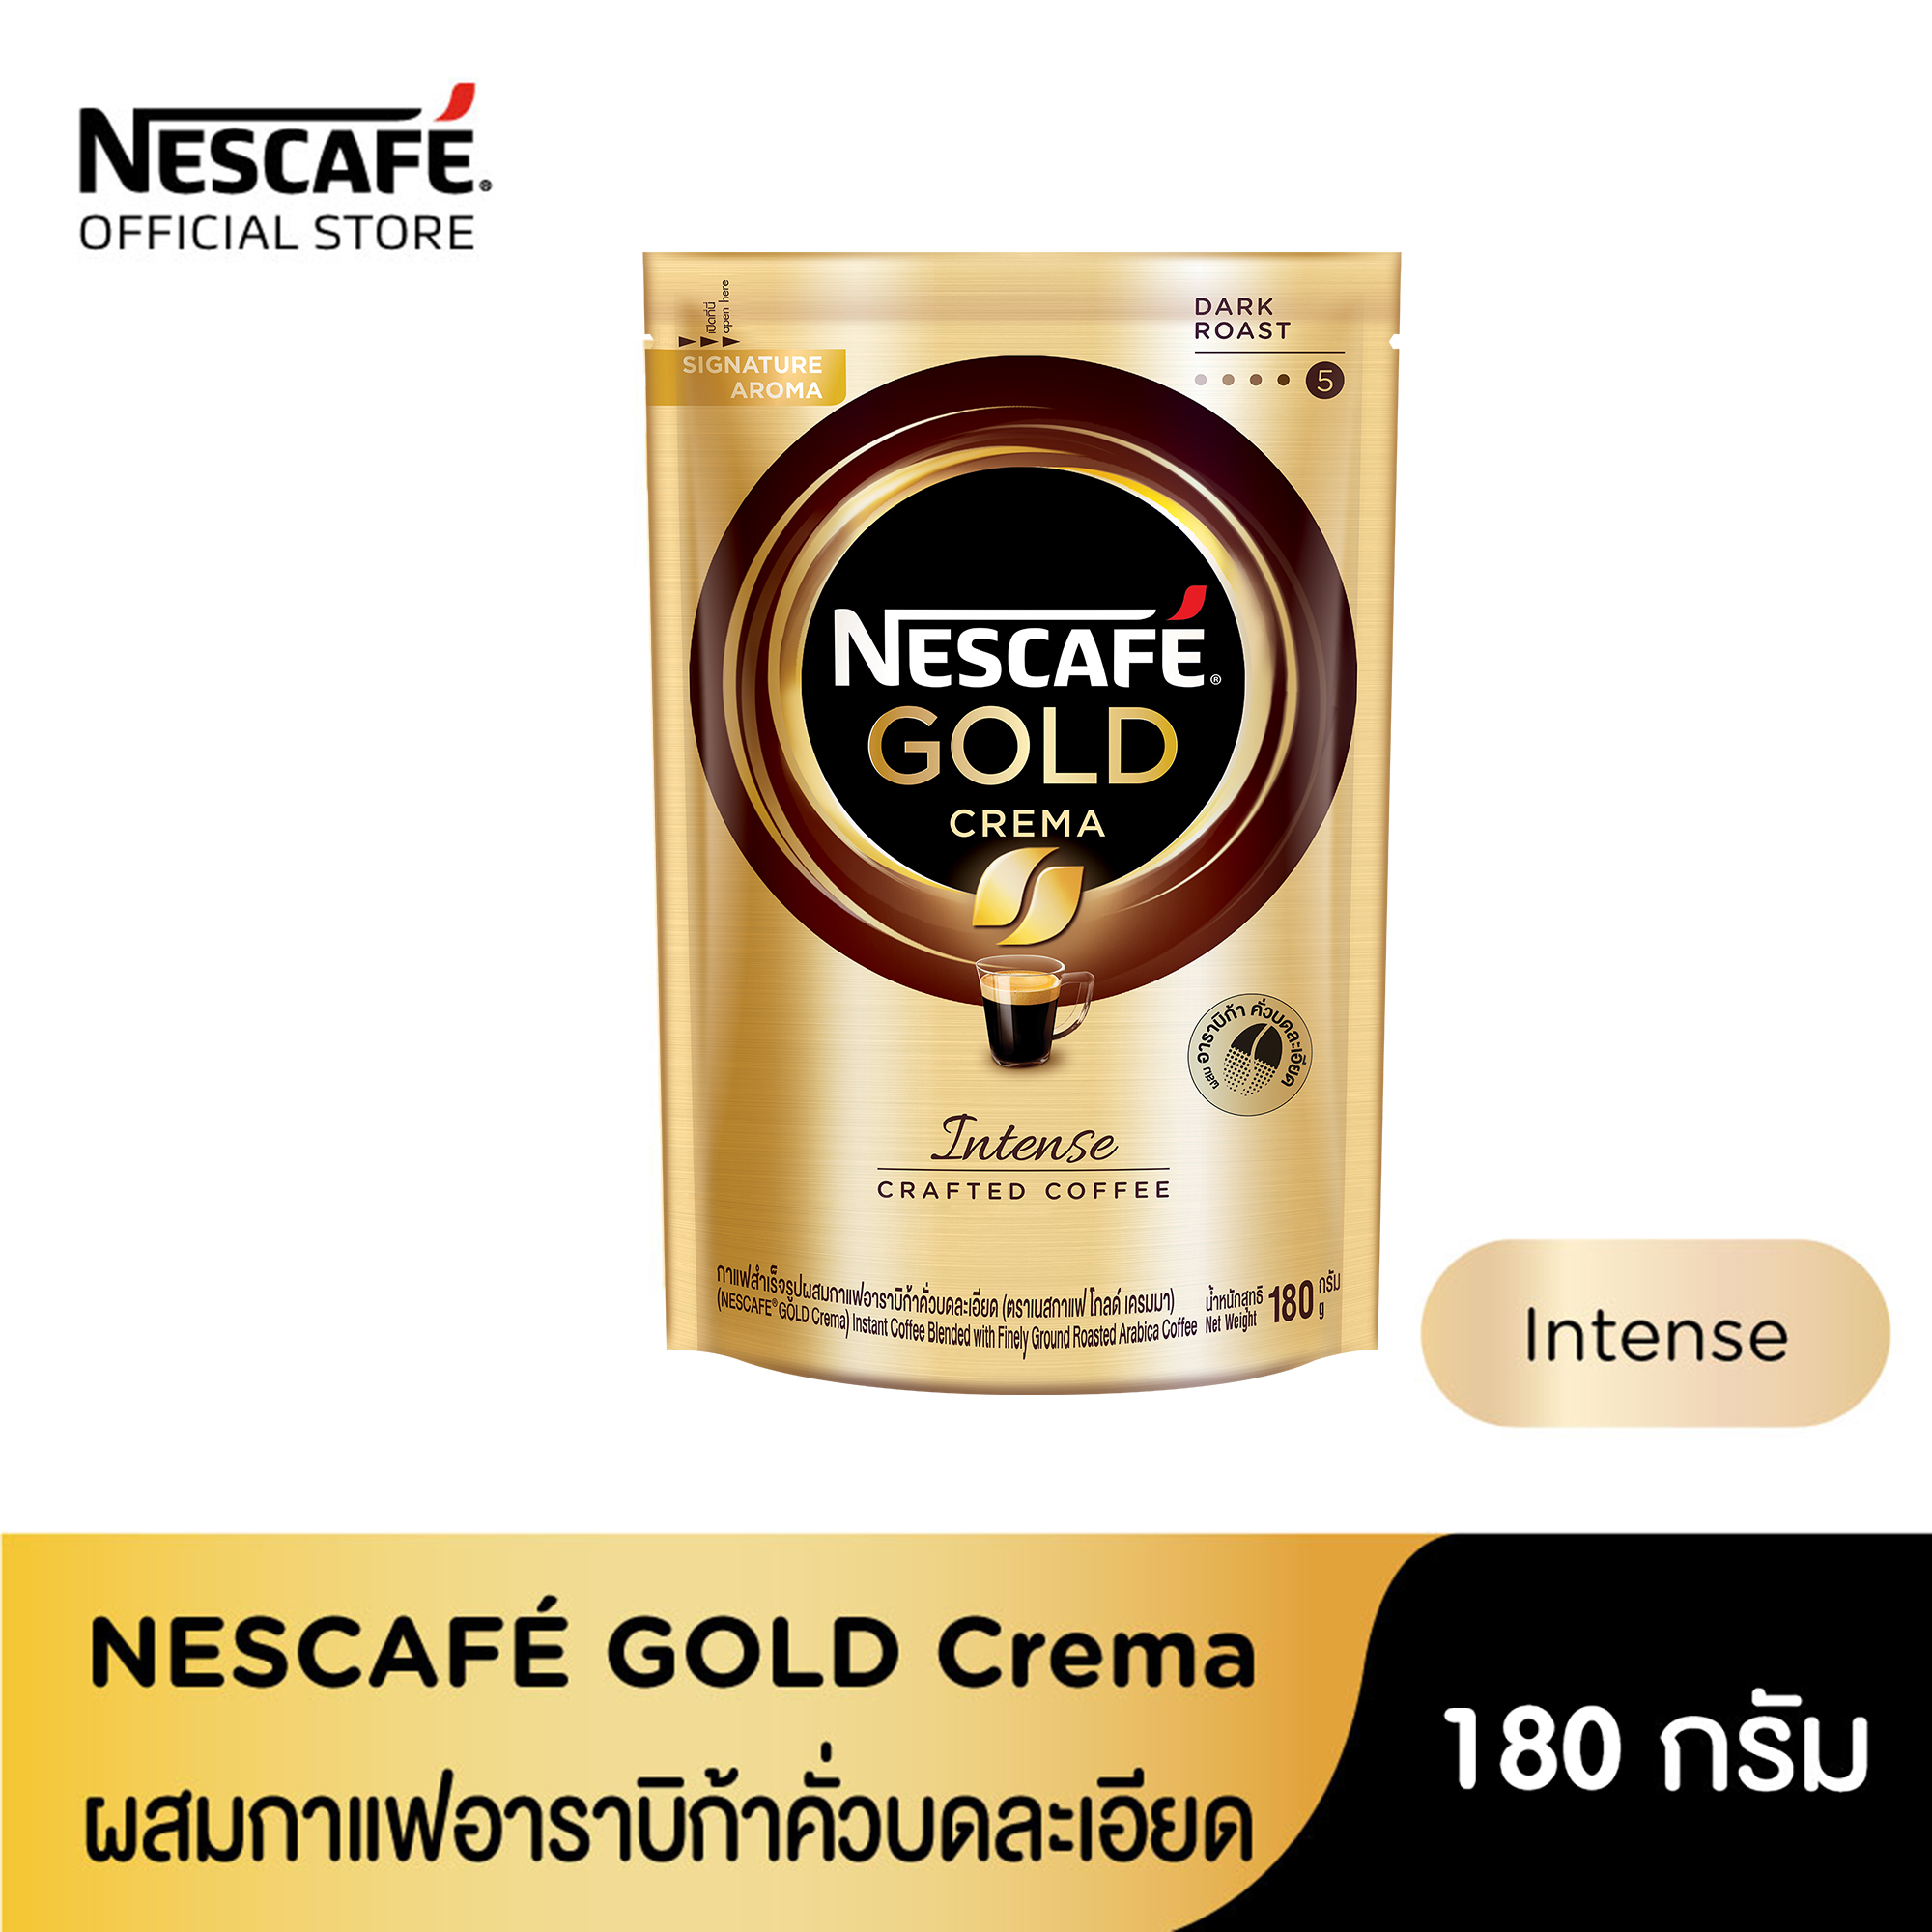 NESCAFÉ Gold Crema Intense เนสกาแฟ โกลด์ เครมมา อินเทนส์ แบบถุง ขนาด 180 กรัม [ NESCAFE ]